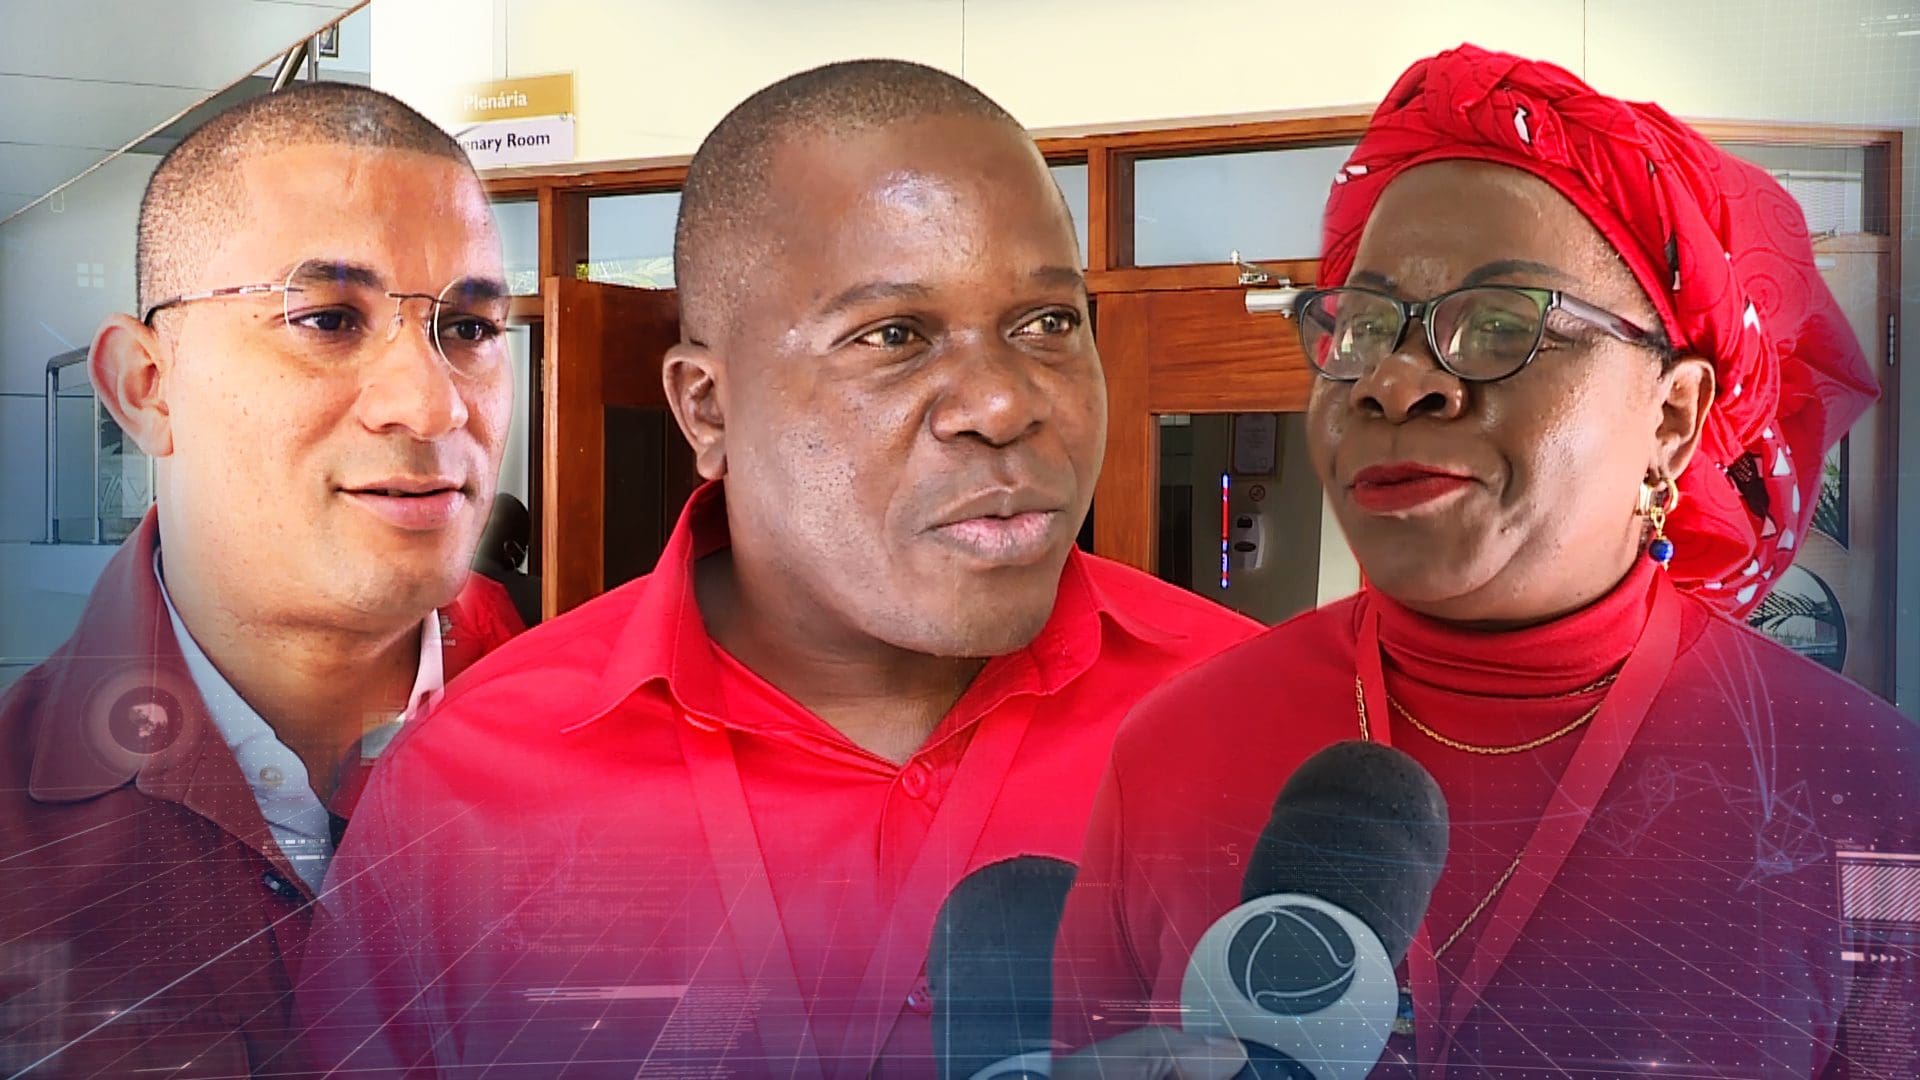 Membros proeminentes da Frelimo distanciam-se do discurso de tribalismo e reiteram foco na unidade nacional